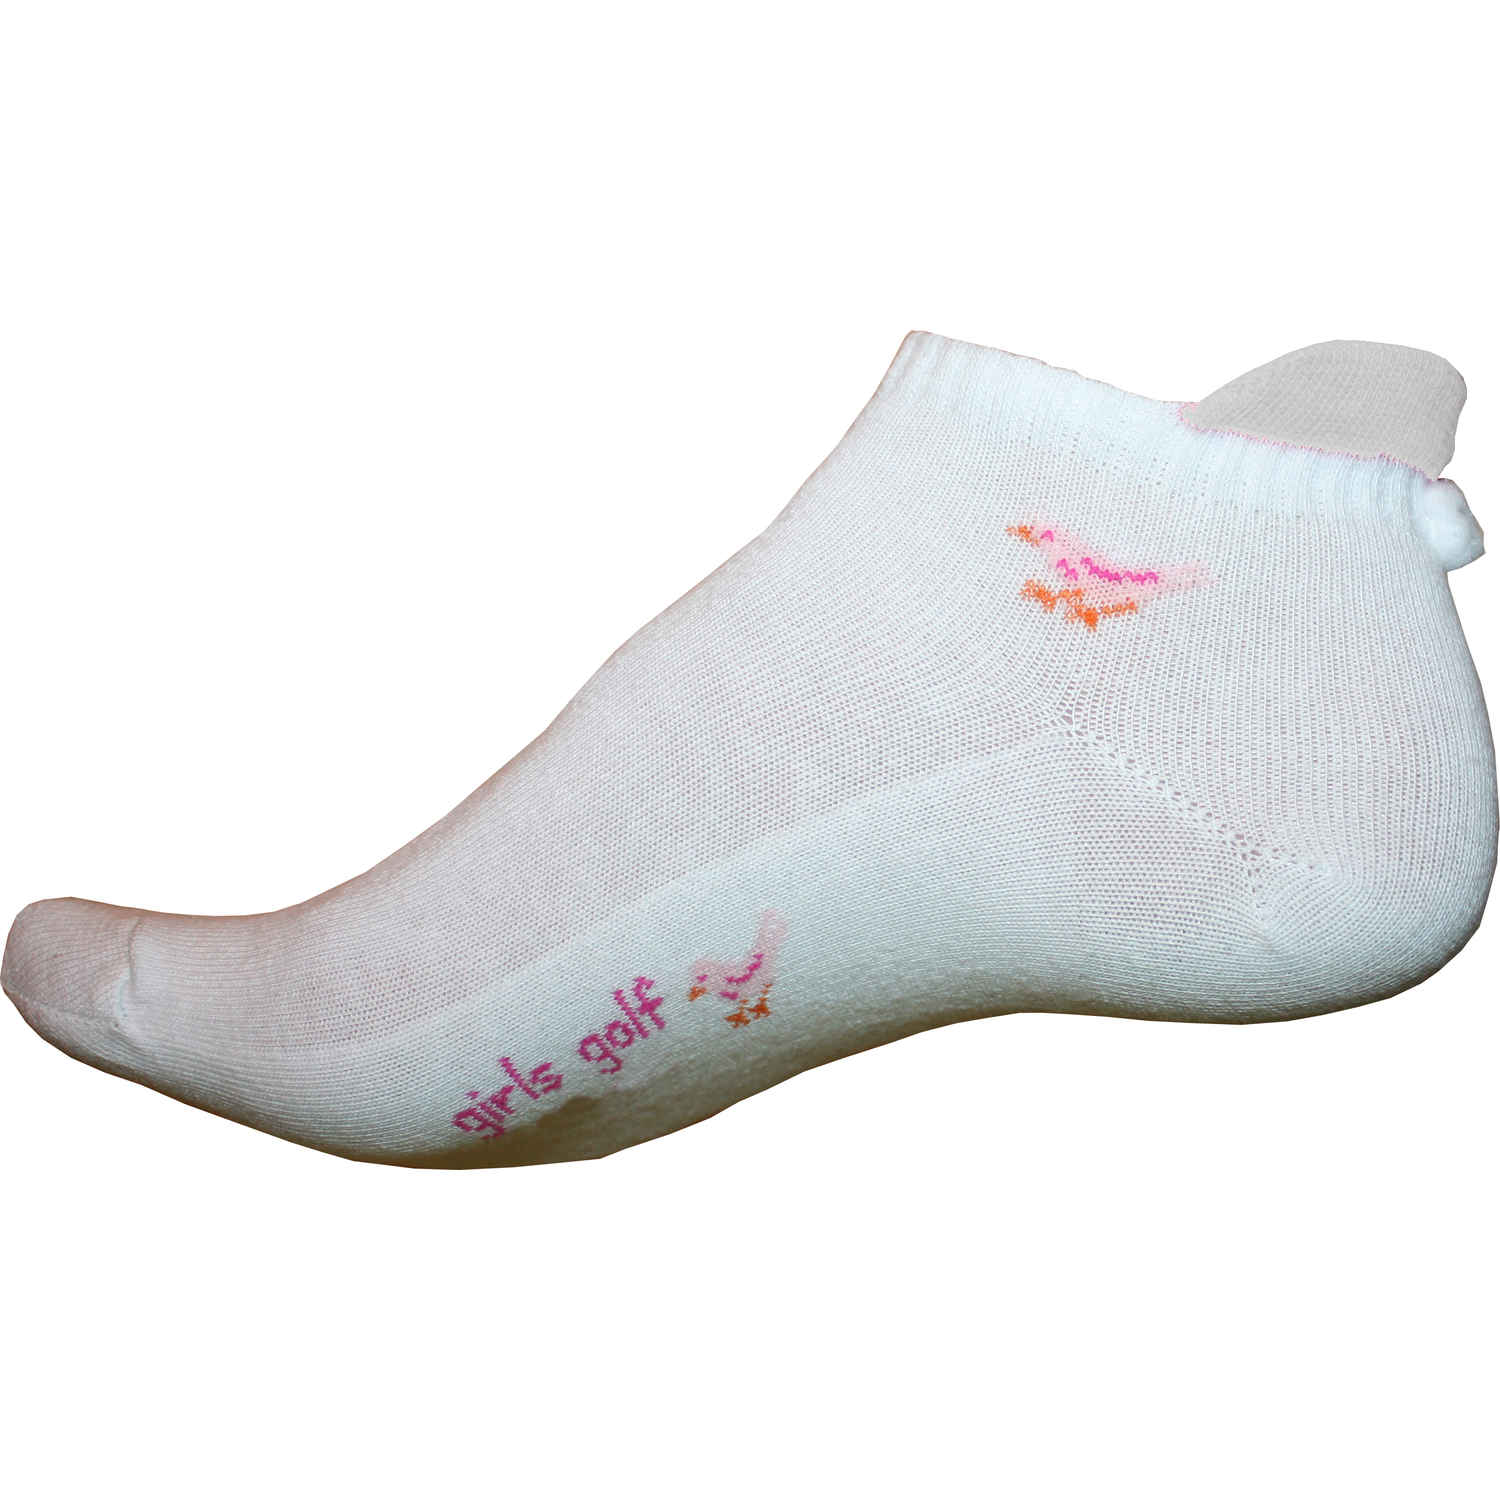 girls golf Socks with pompom (one size)